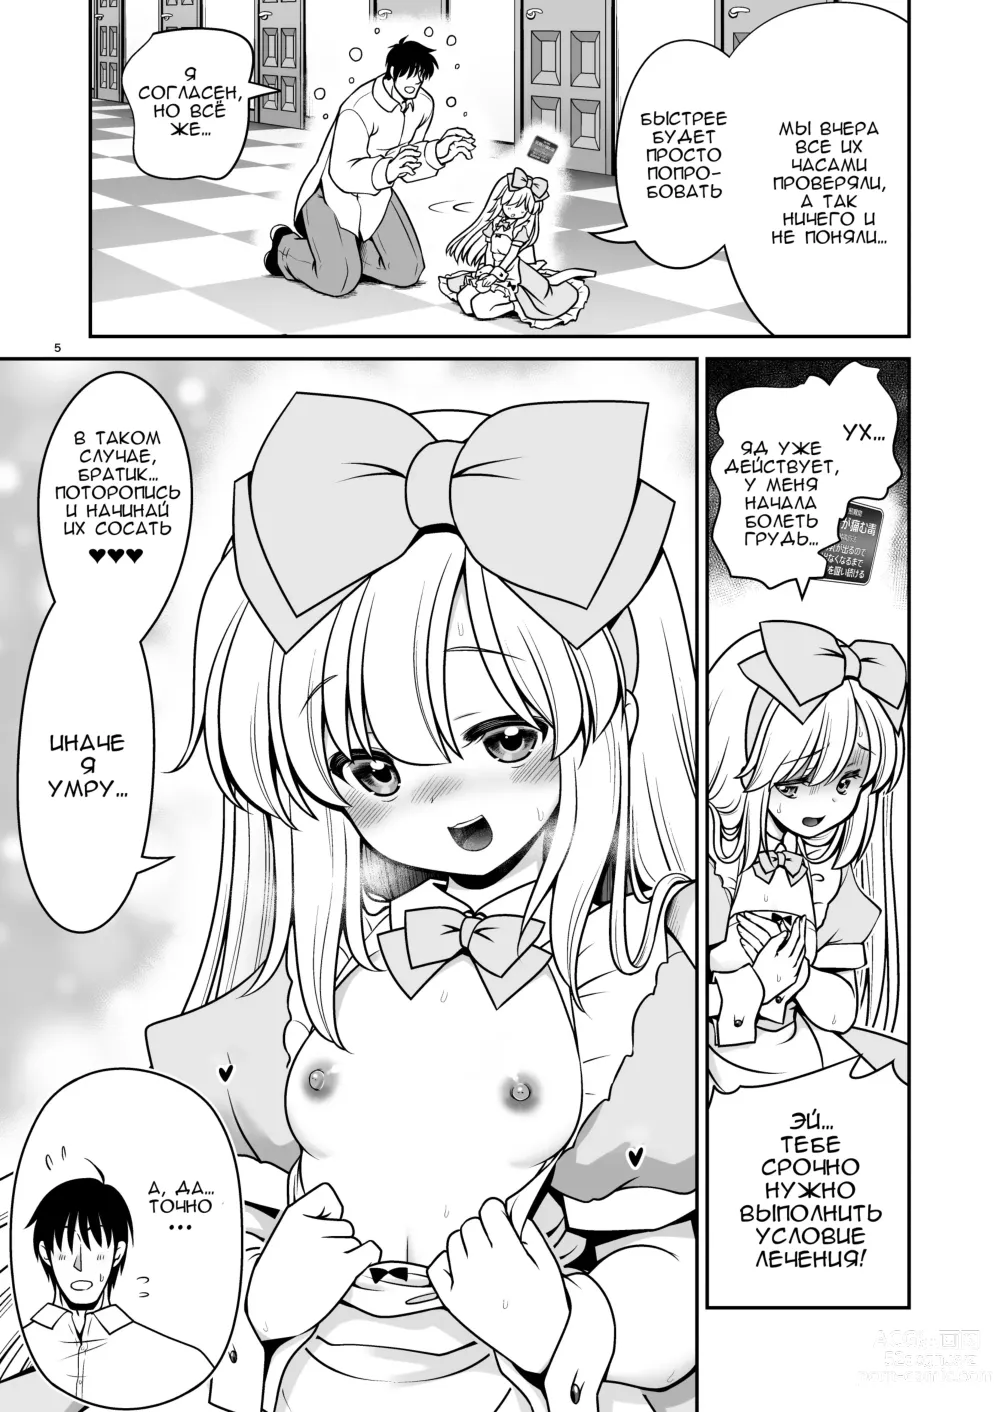 Page 5 of doujinshi Безнадёжная алиса, которая настолько подсела на сексуальное лечение, что без разбора ела все ядовитые пироженки